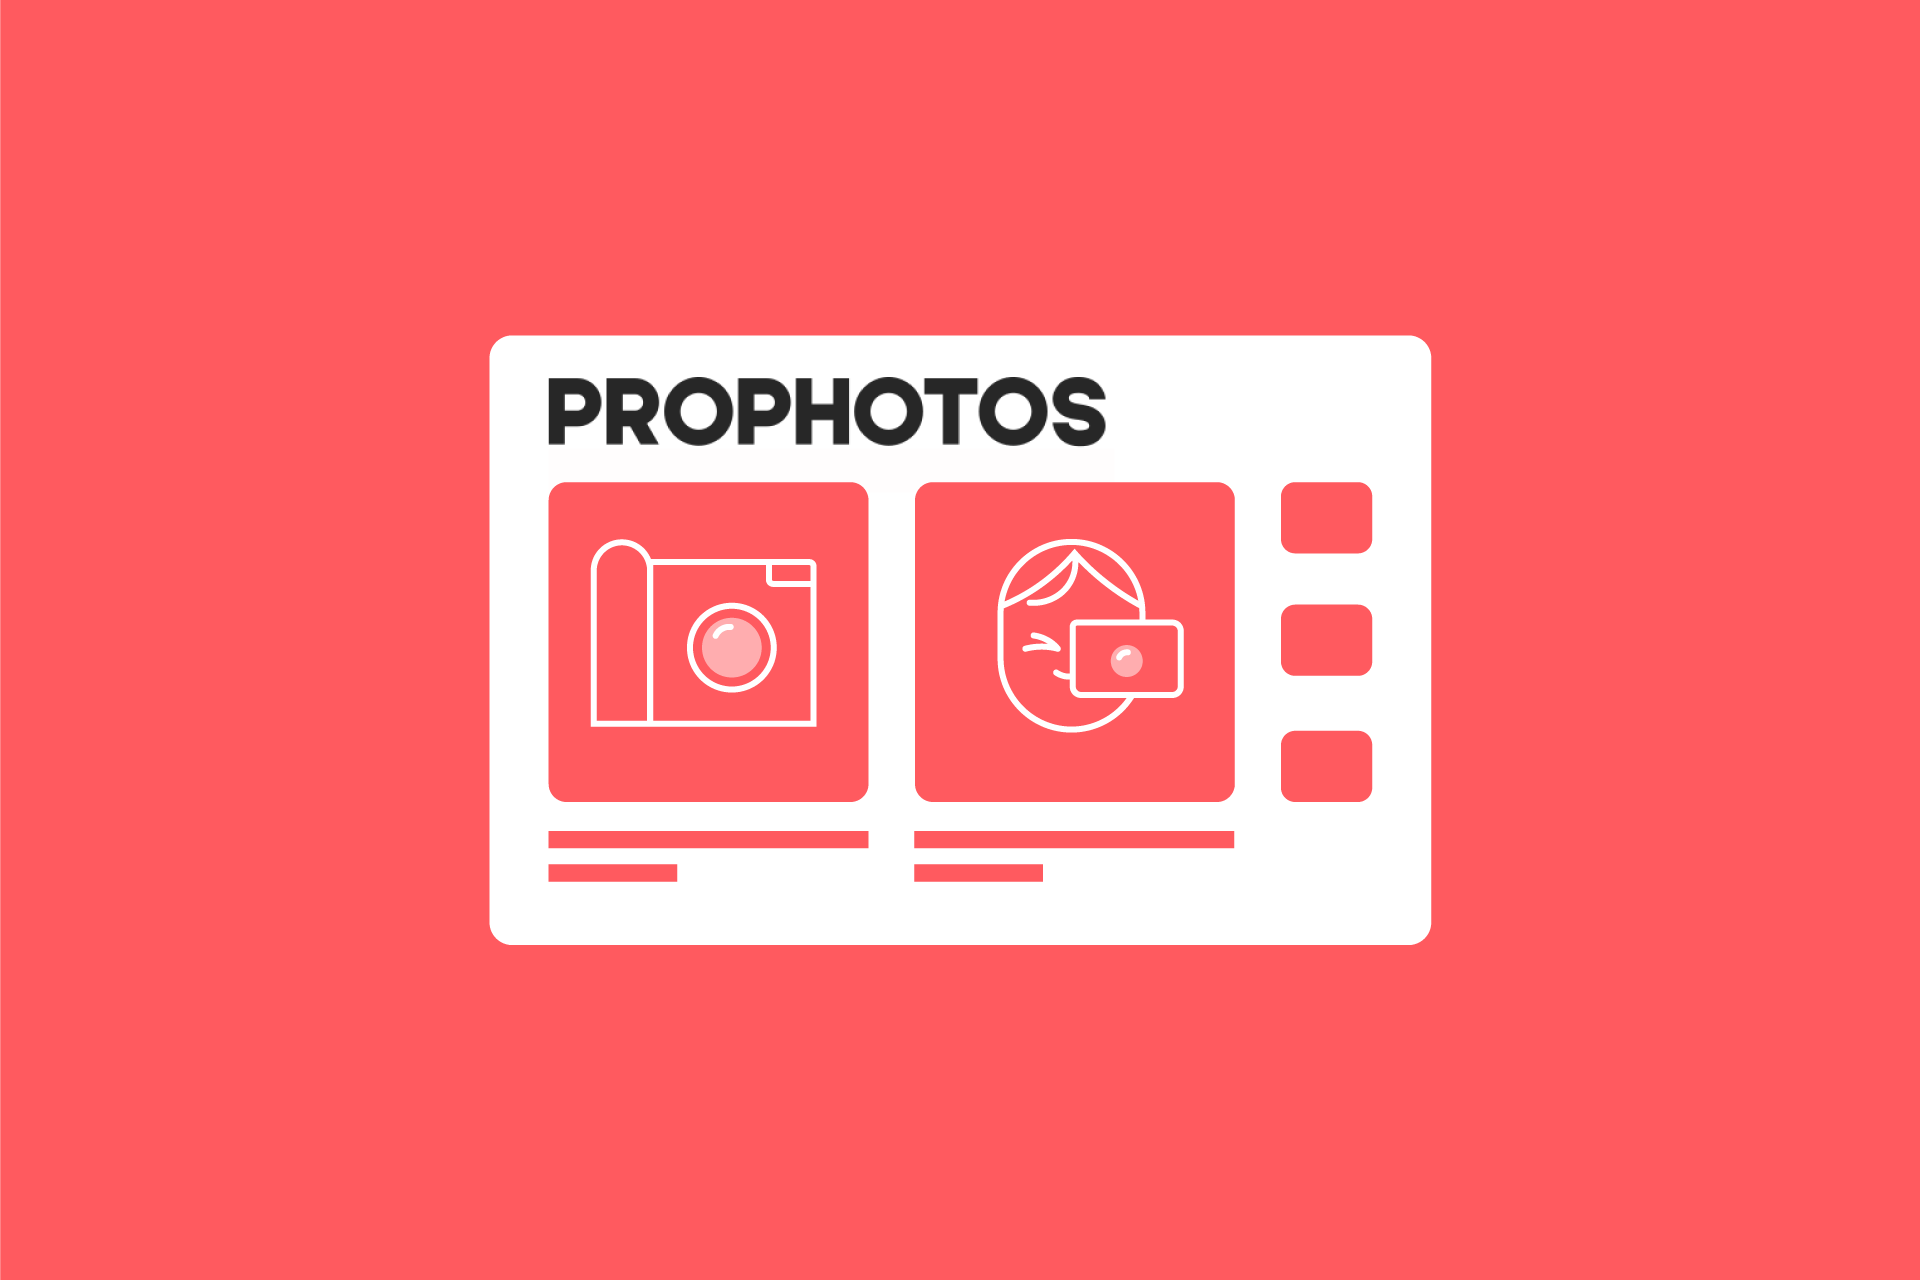 Развиваем классический медиа-портал про фотографию и фототехнику Prophotos